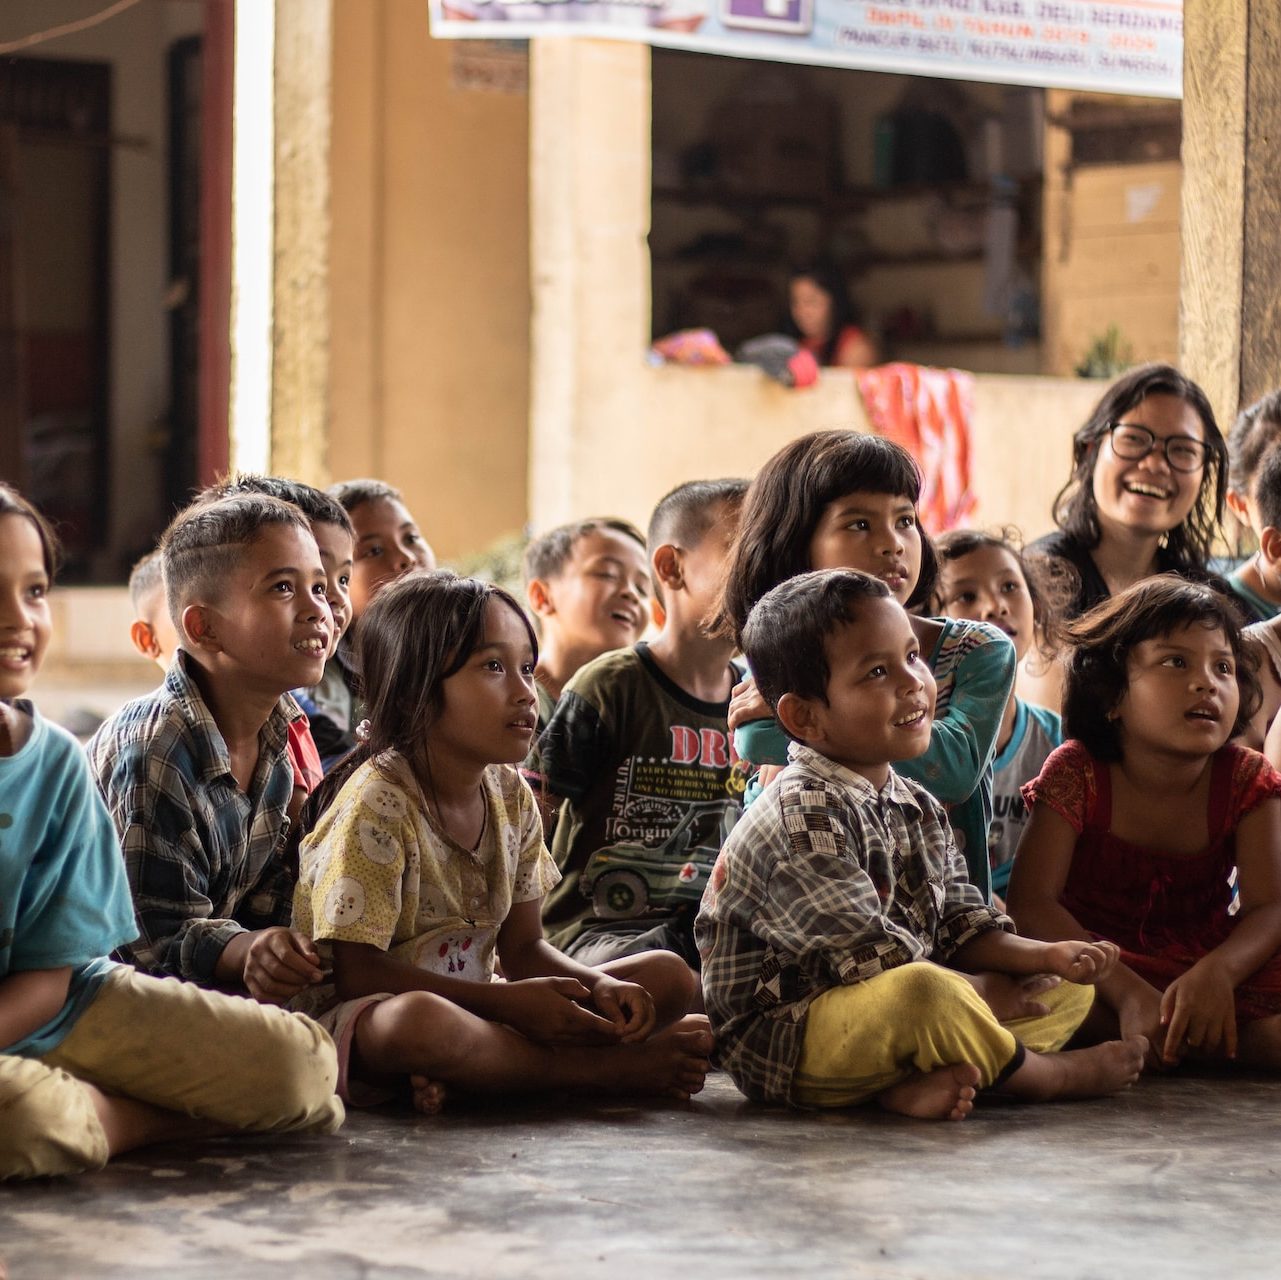 Schulkinder sitzend, verkörpern "Help 4 Life Global e.V."'s Einsatz für weltweite Bildung.